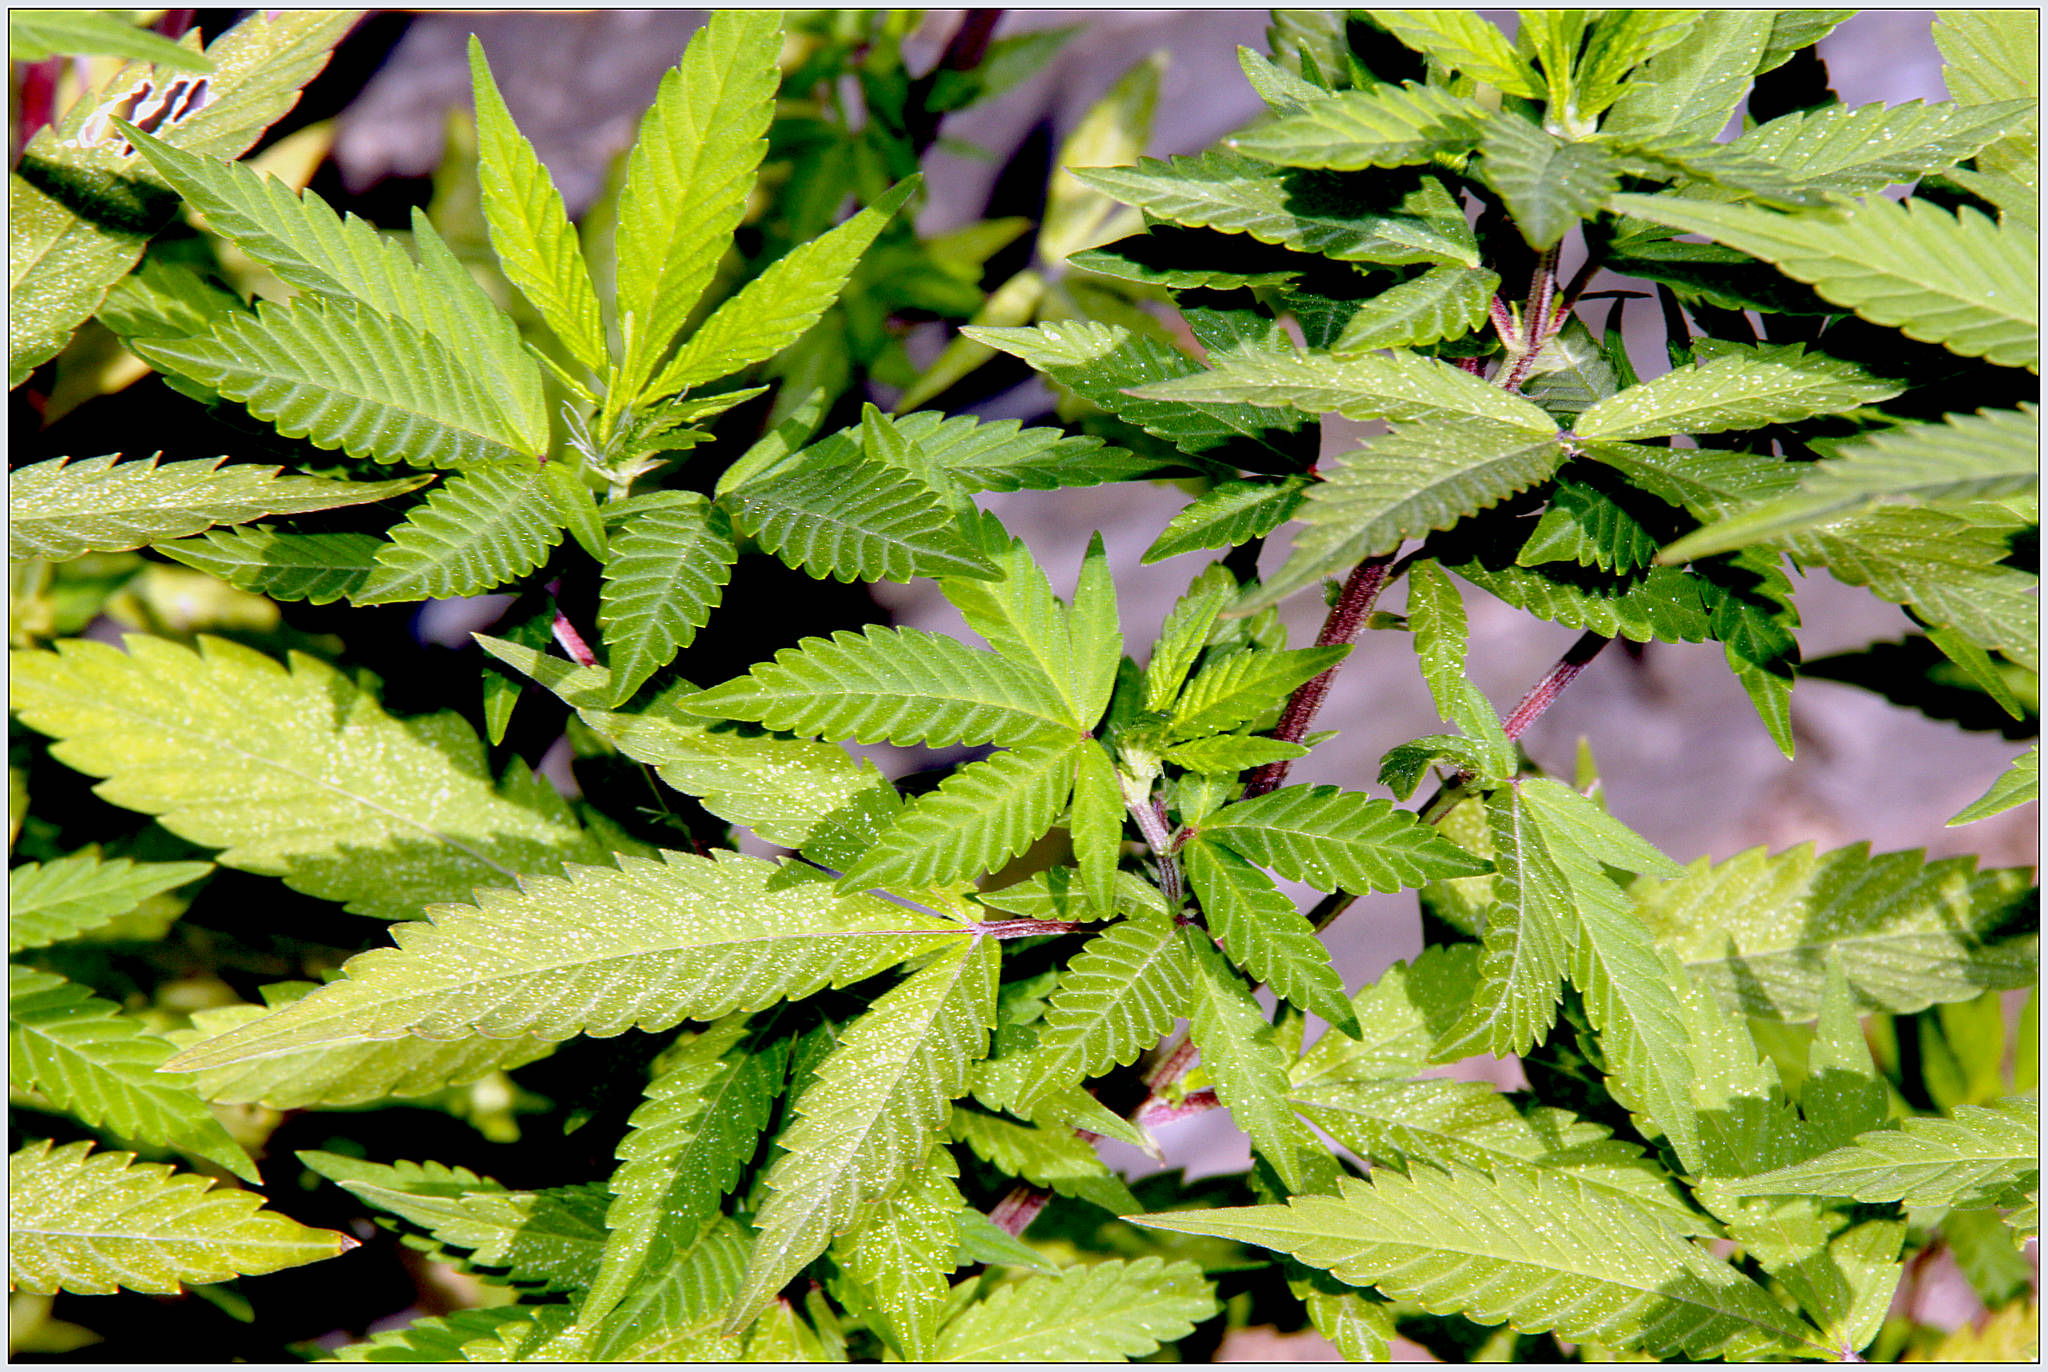 Sicilia “stupefacente”: prima in Italia  per produzione di cannabis